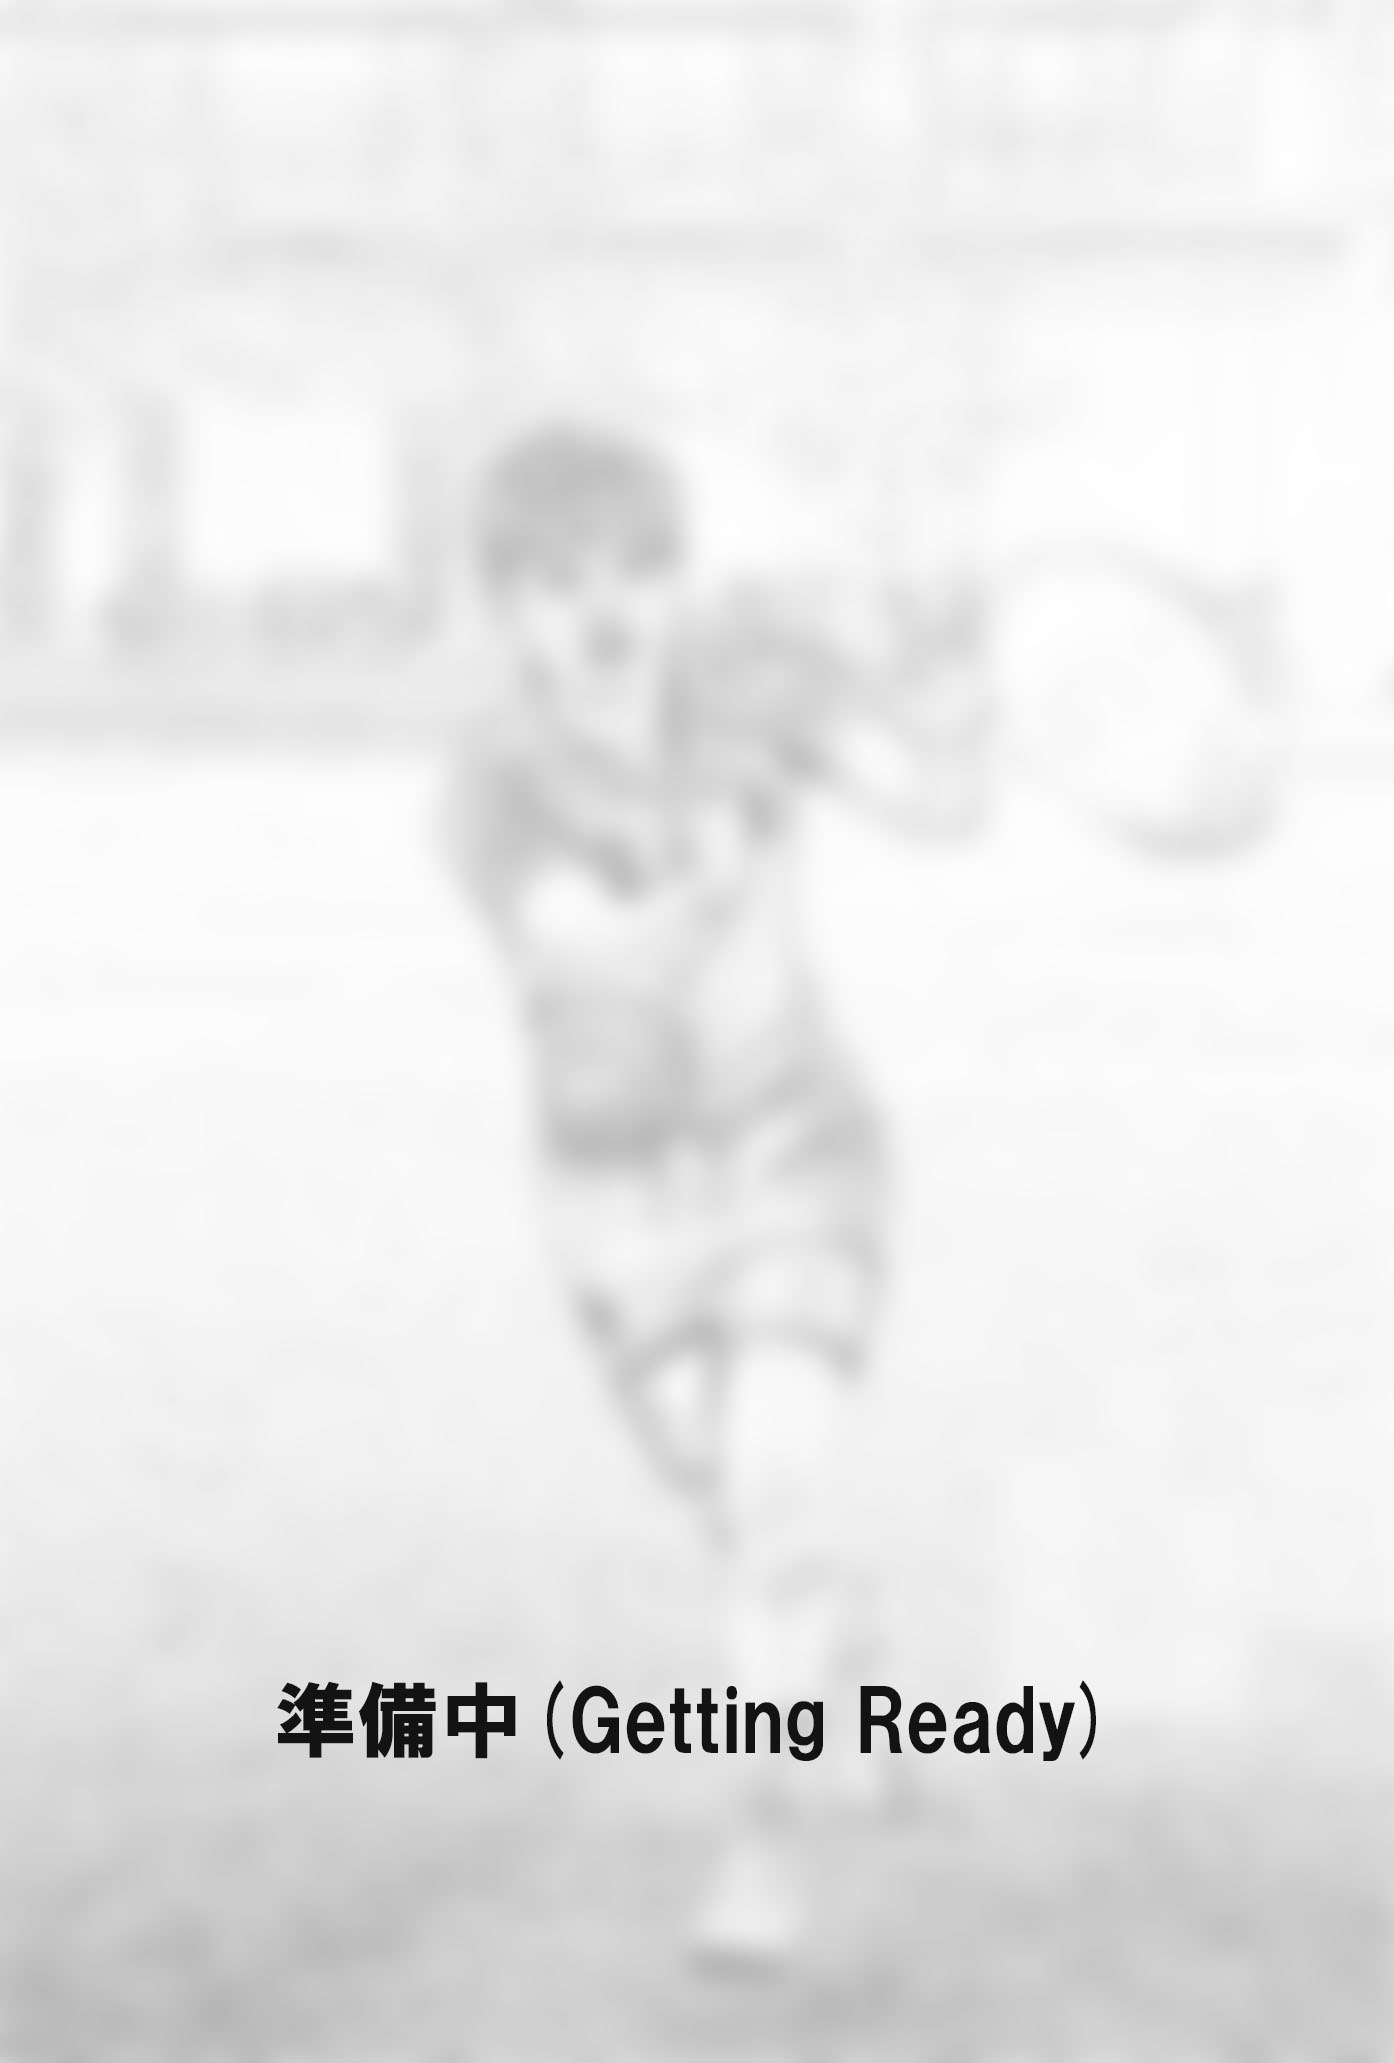 荻原 干城(おぎわら たてき)選手の写真